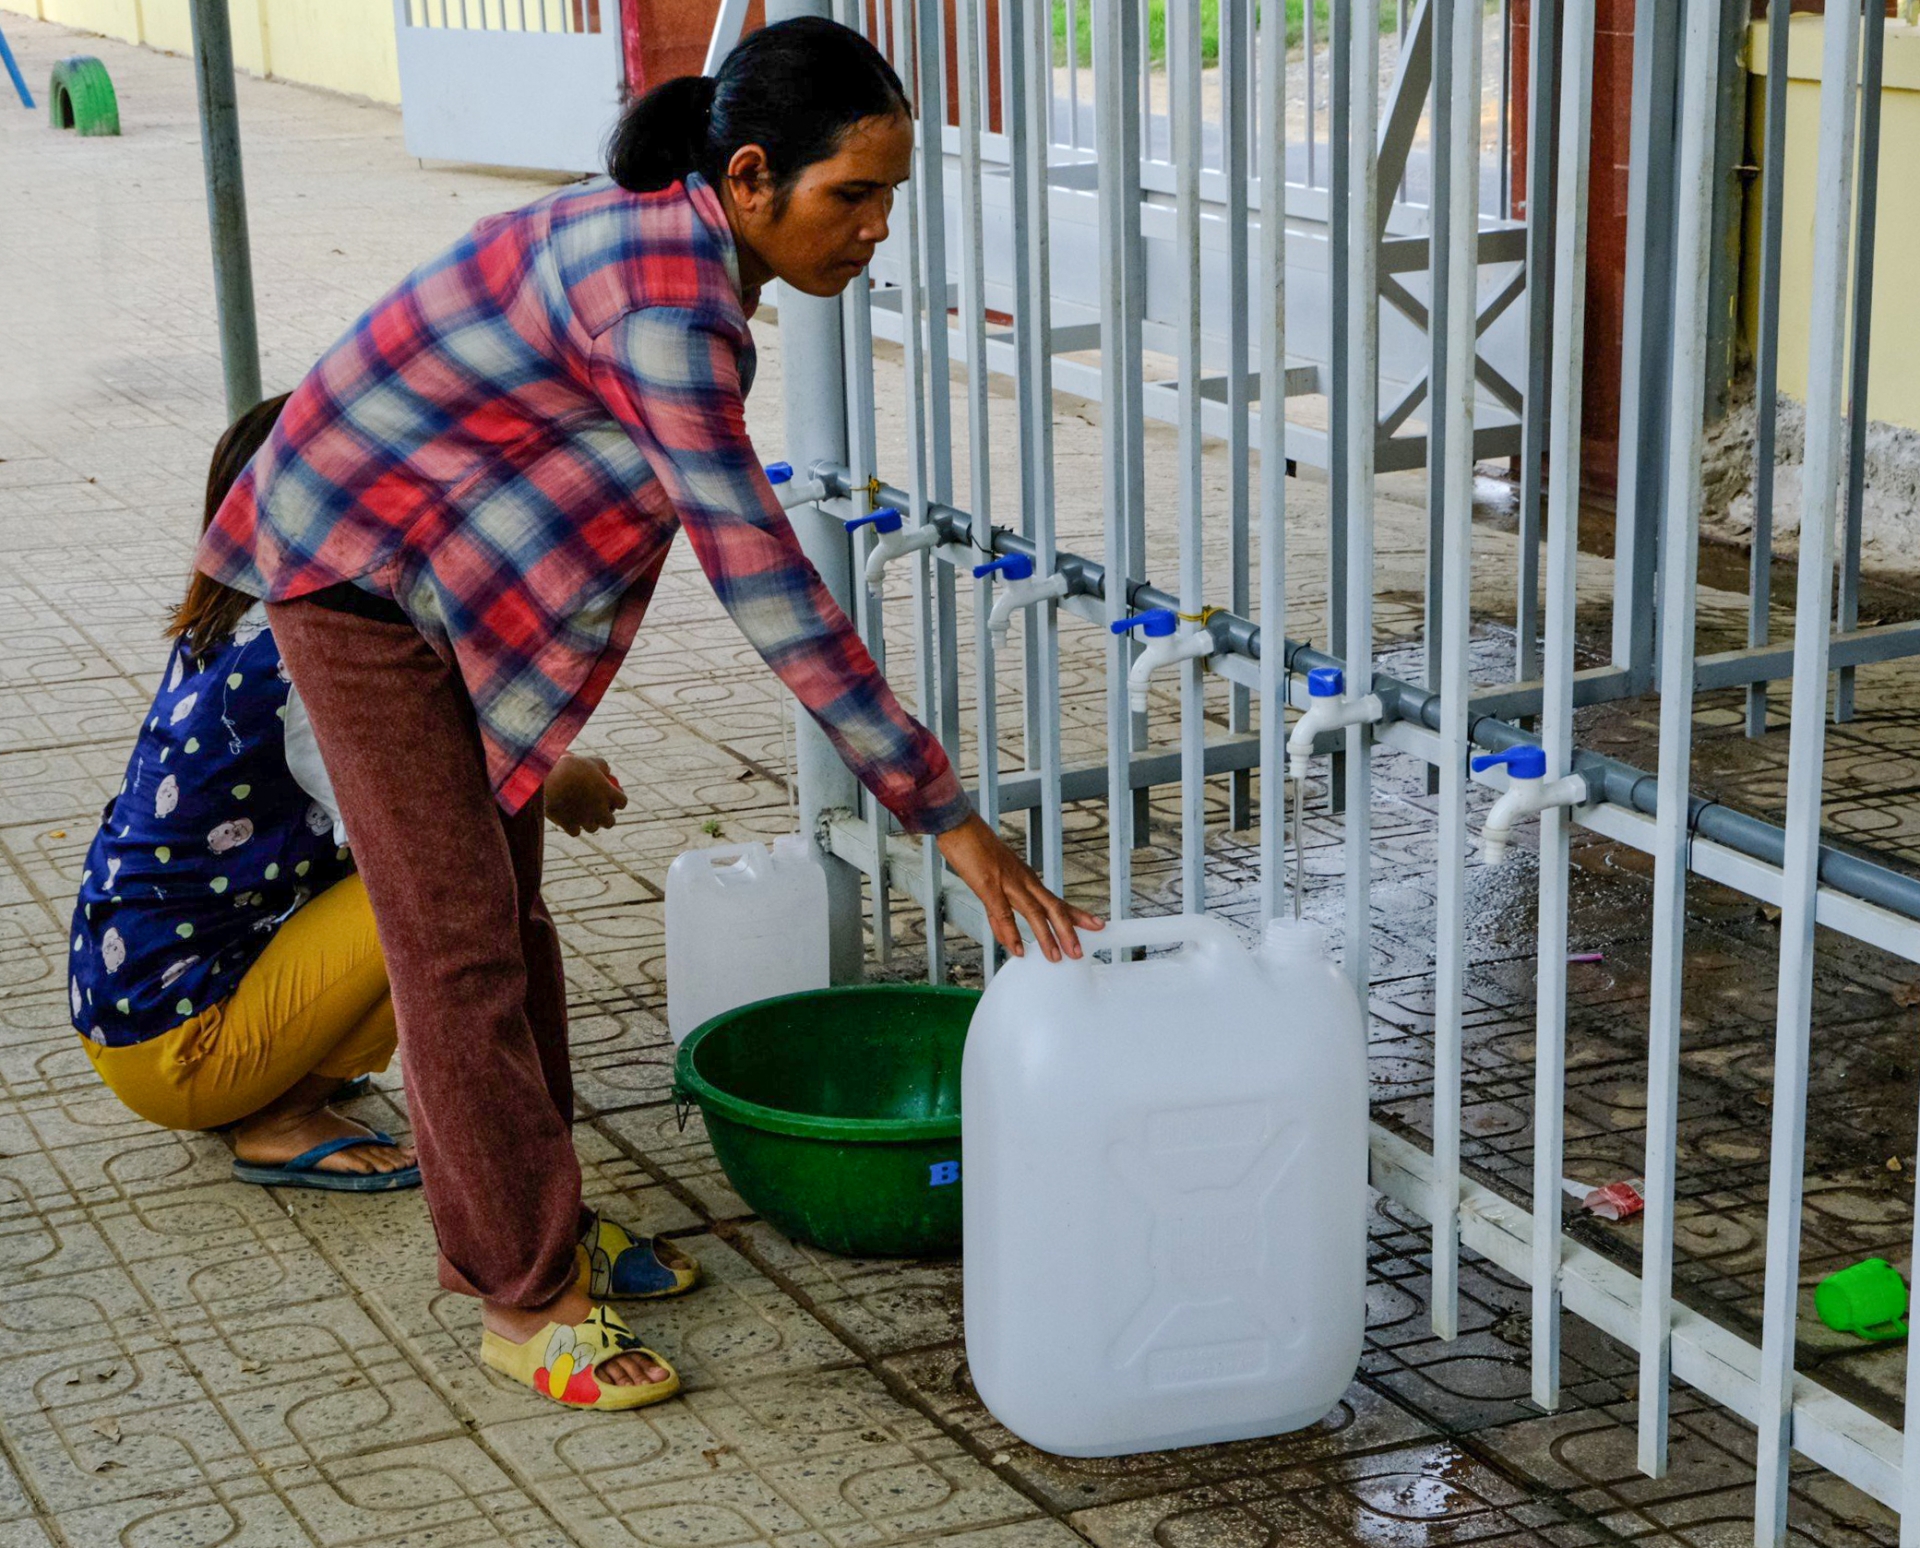 Do giếng đào của gia đình đã cạn, hàng ngày chị Ka Hội (Thôn 3, xã Lộc Bảo) mang theo can nhựa tìm đến phân hiệu Trường Tiểu học lấy nước về ăn uống